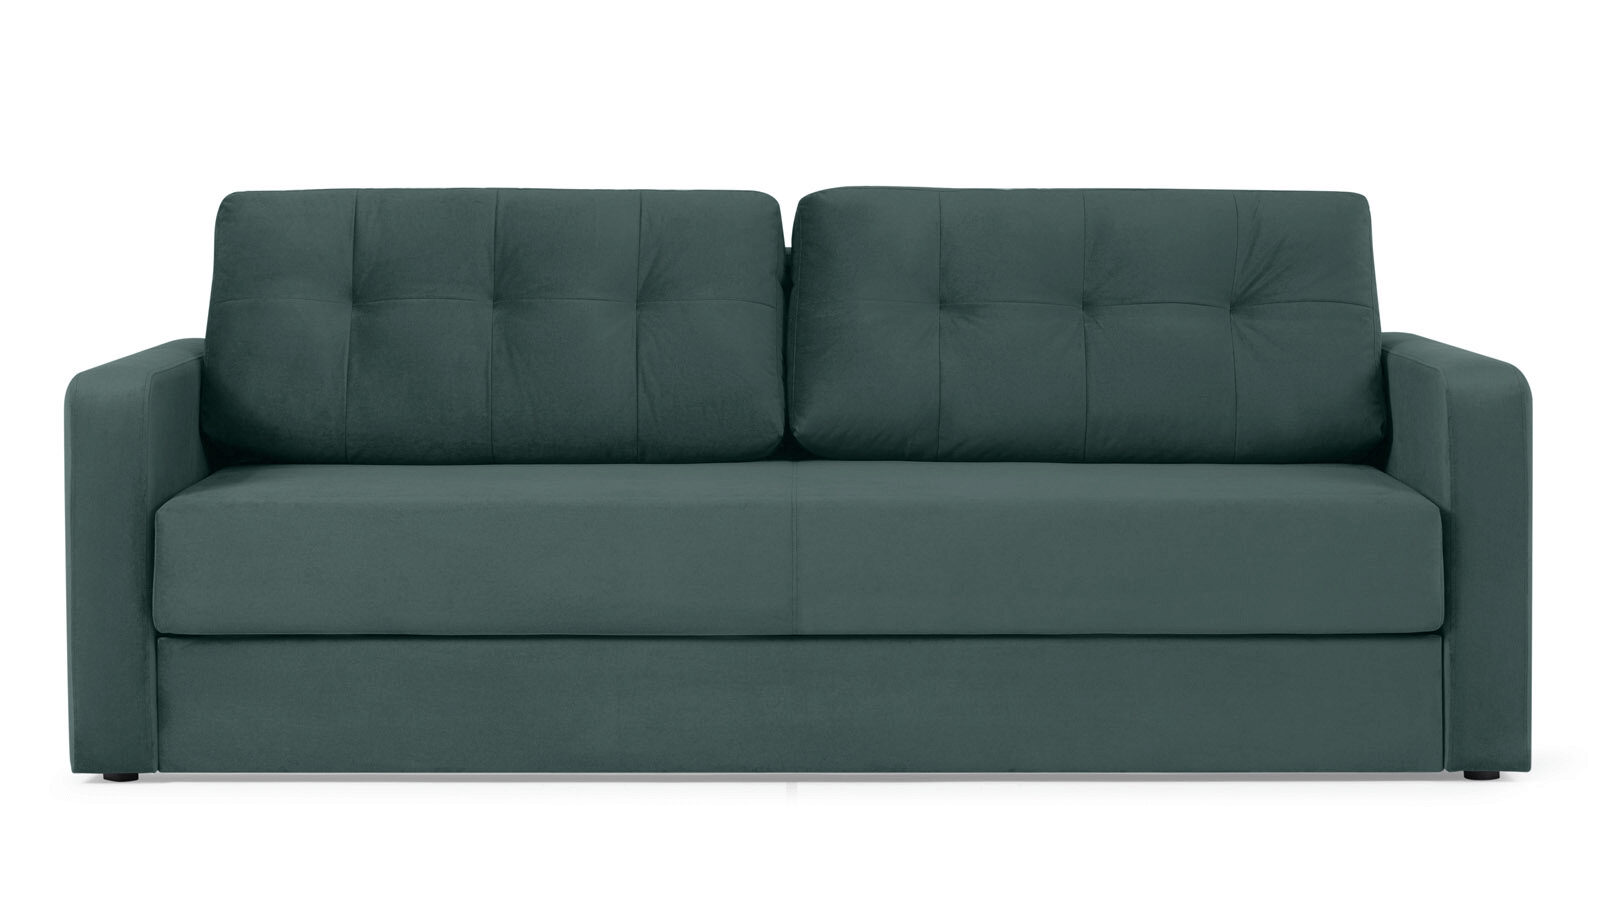 Прямой диван Loko Pro с широкими подлокотниками, с матрасом комбинированной жесткости плавучий диван выпуск 2